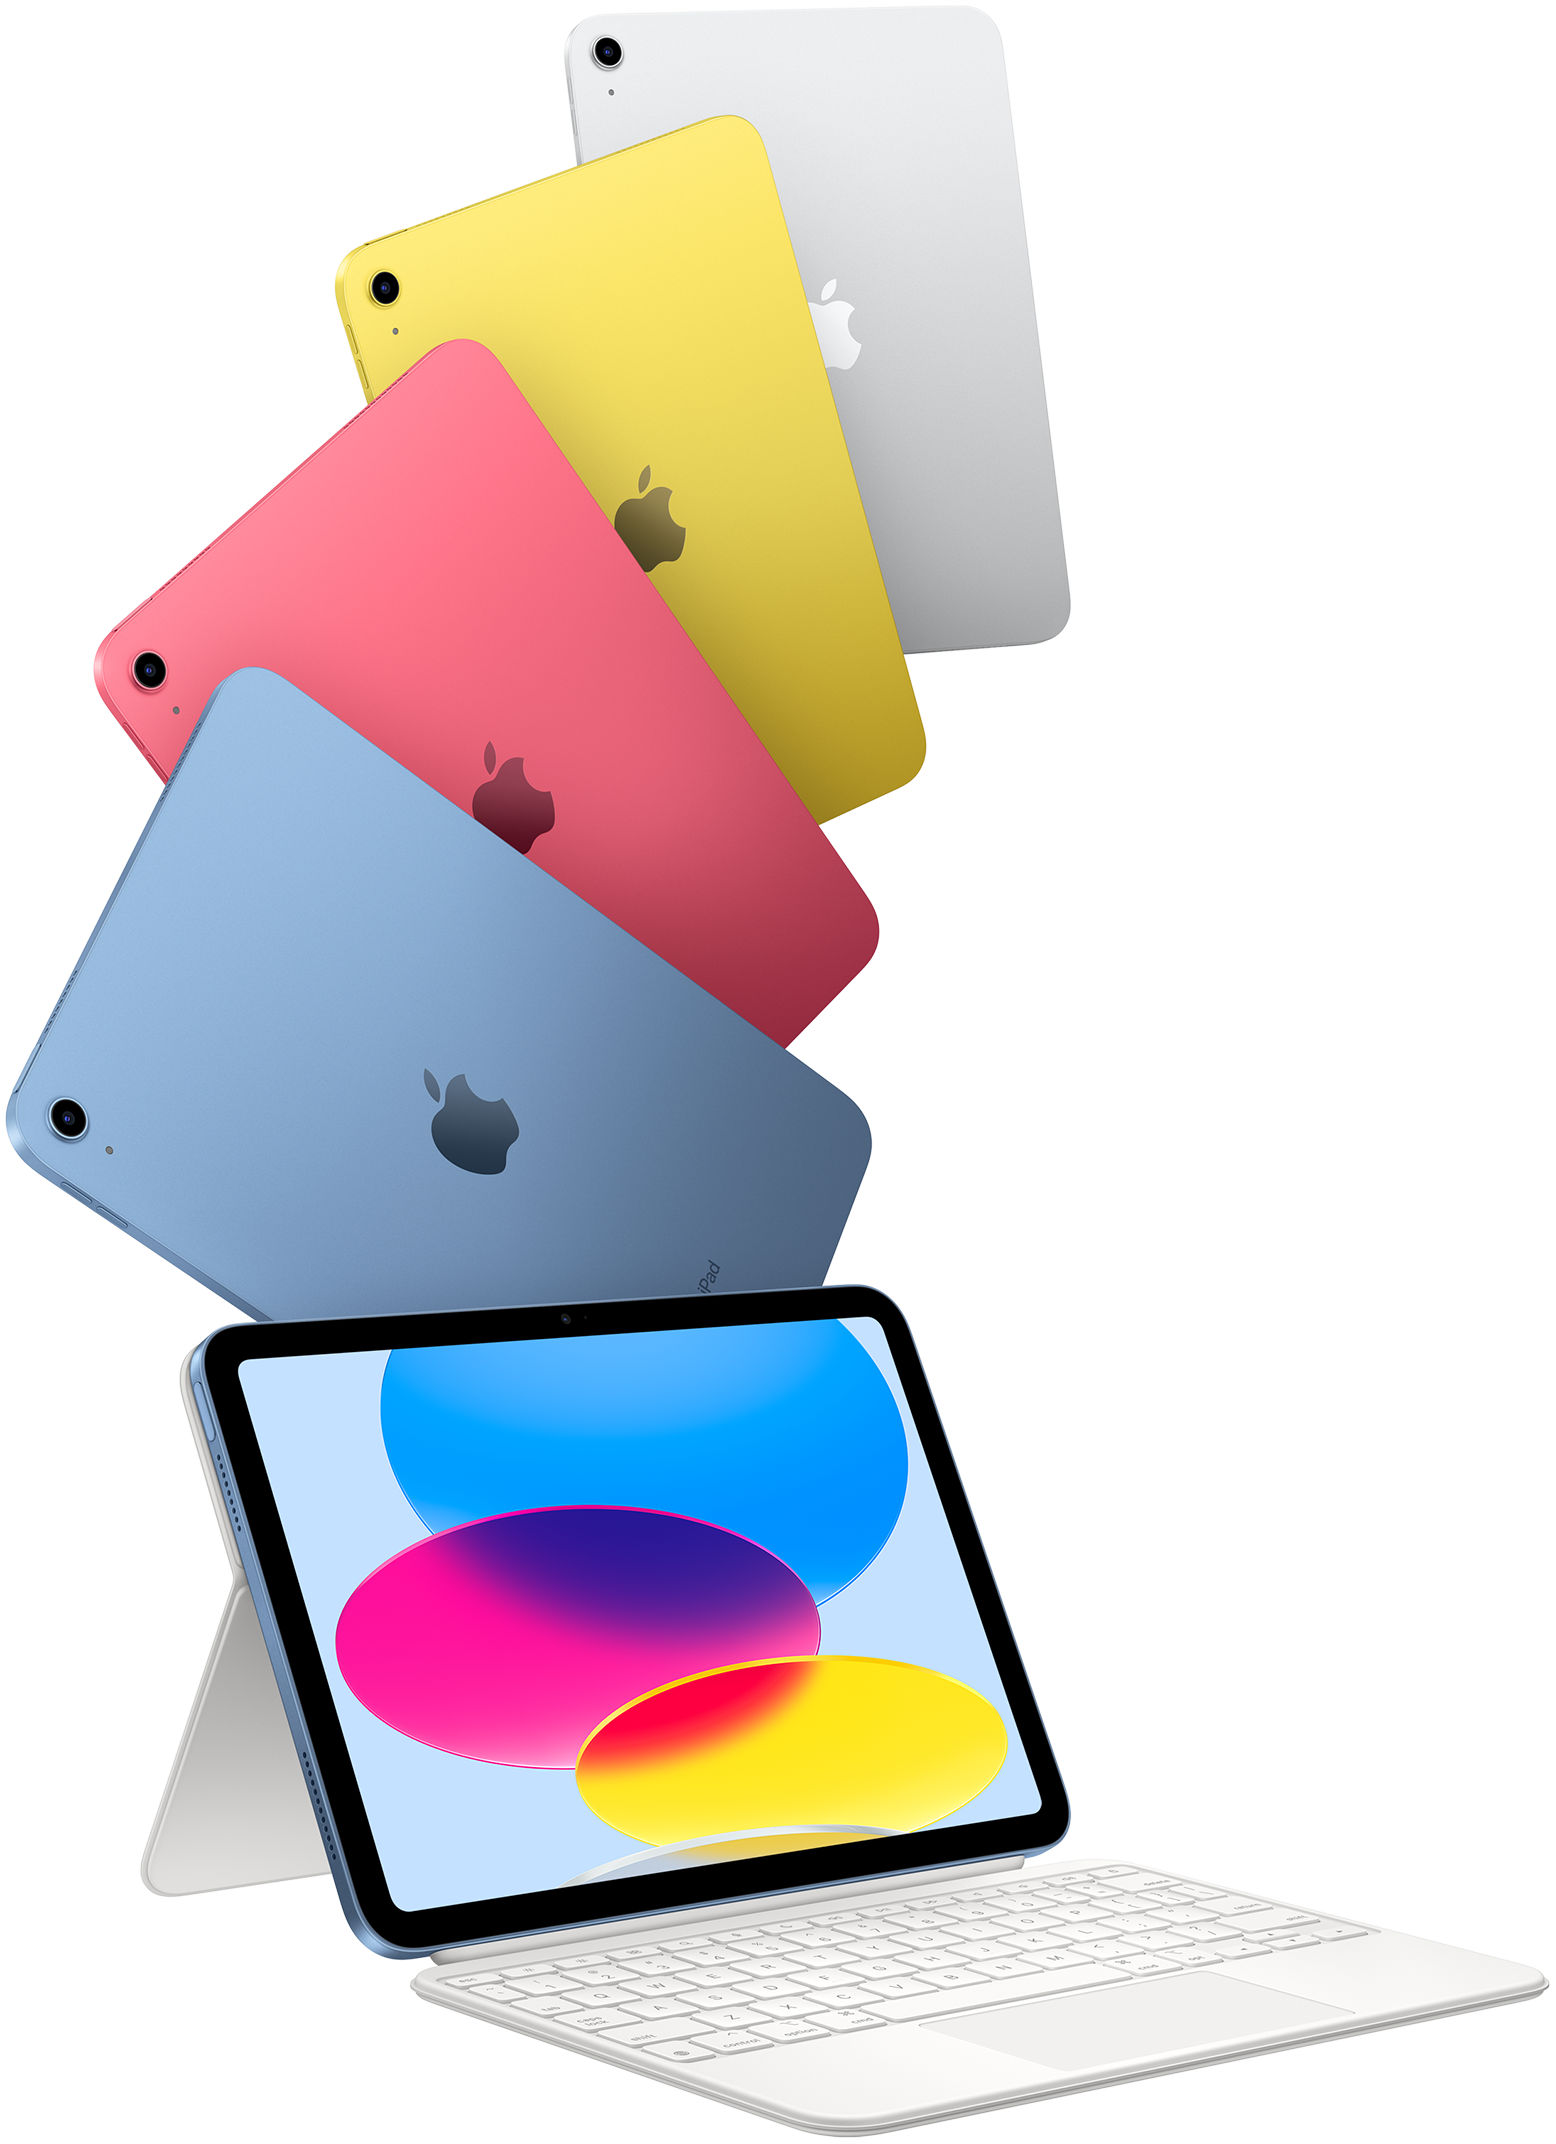 iPad en azul, rosa, amarillo y color plata y un iPad conectado al Magic Keyboard Folio.